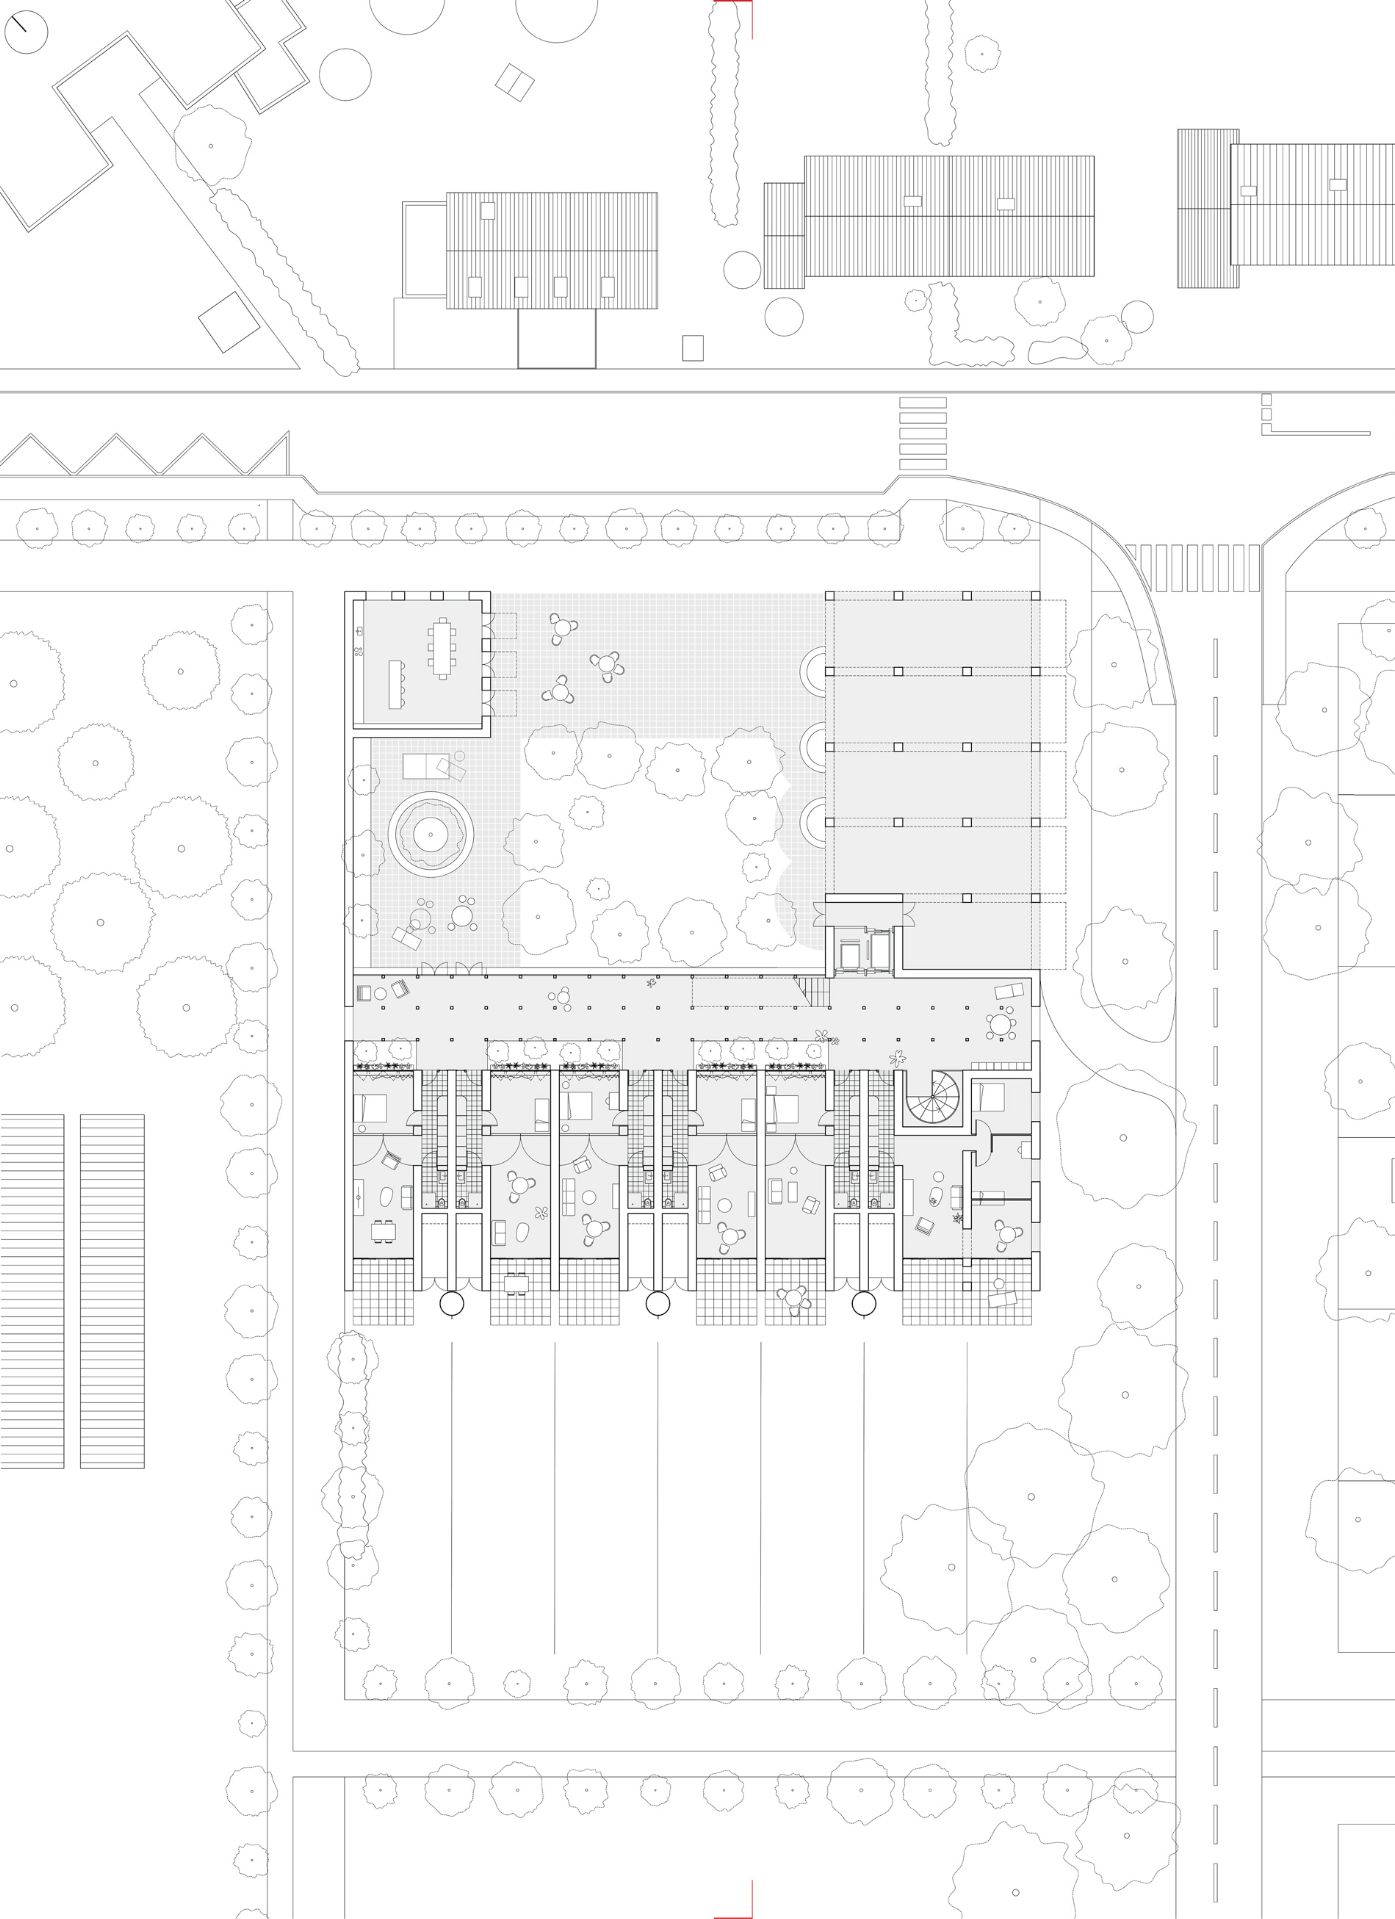 Plan de sol du projet logement entre Coudekerque Branche et Téteghem